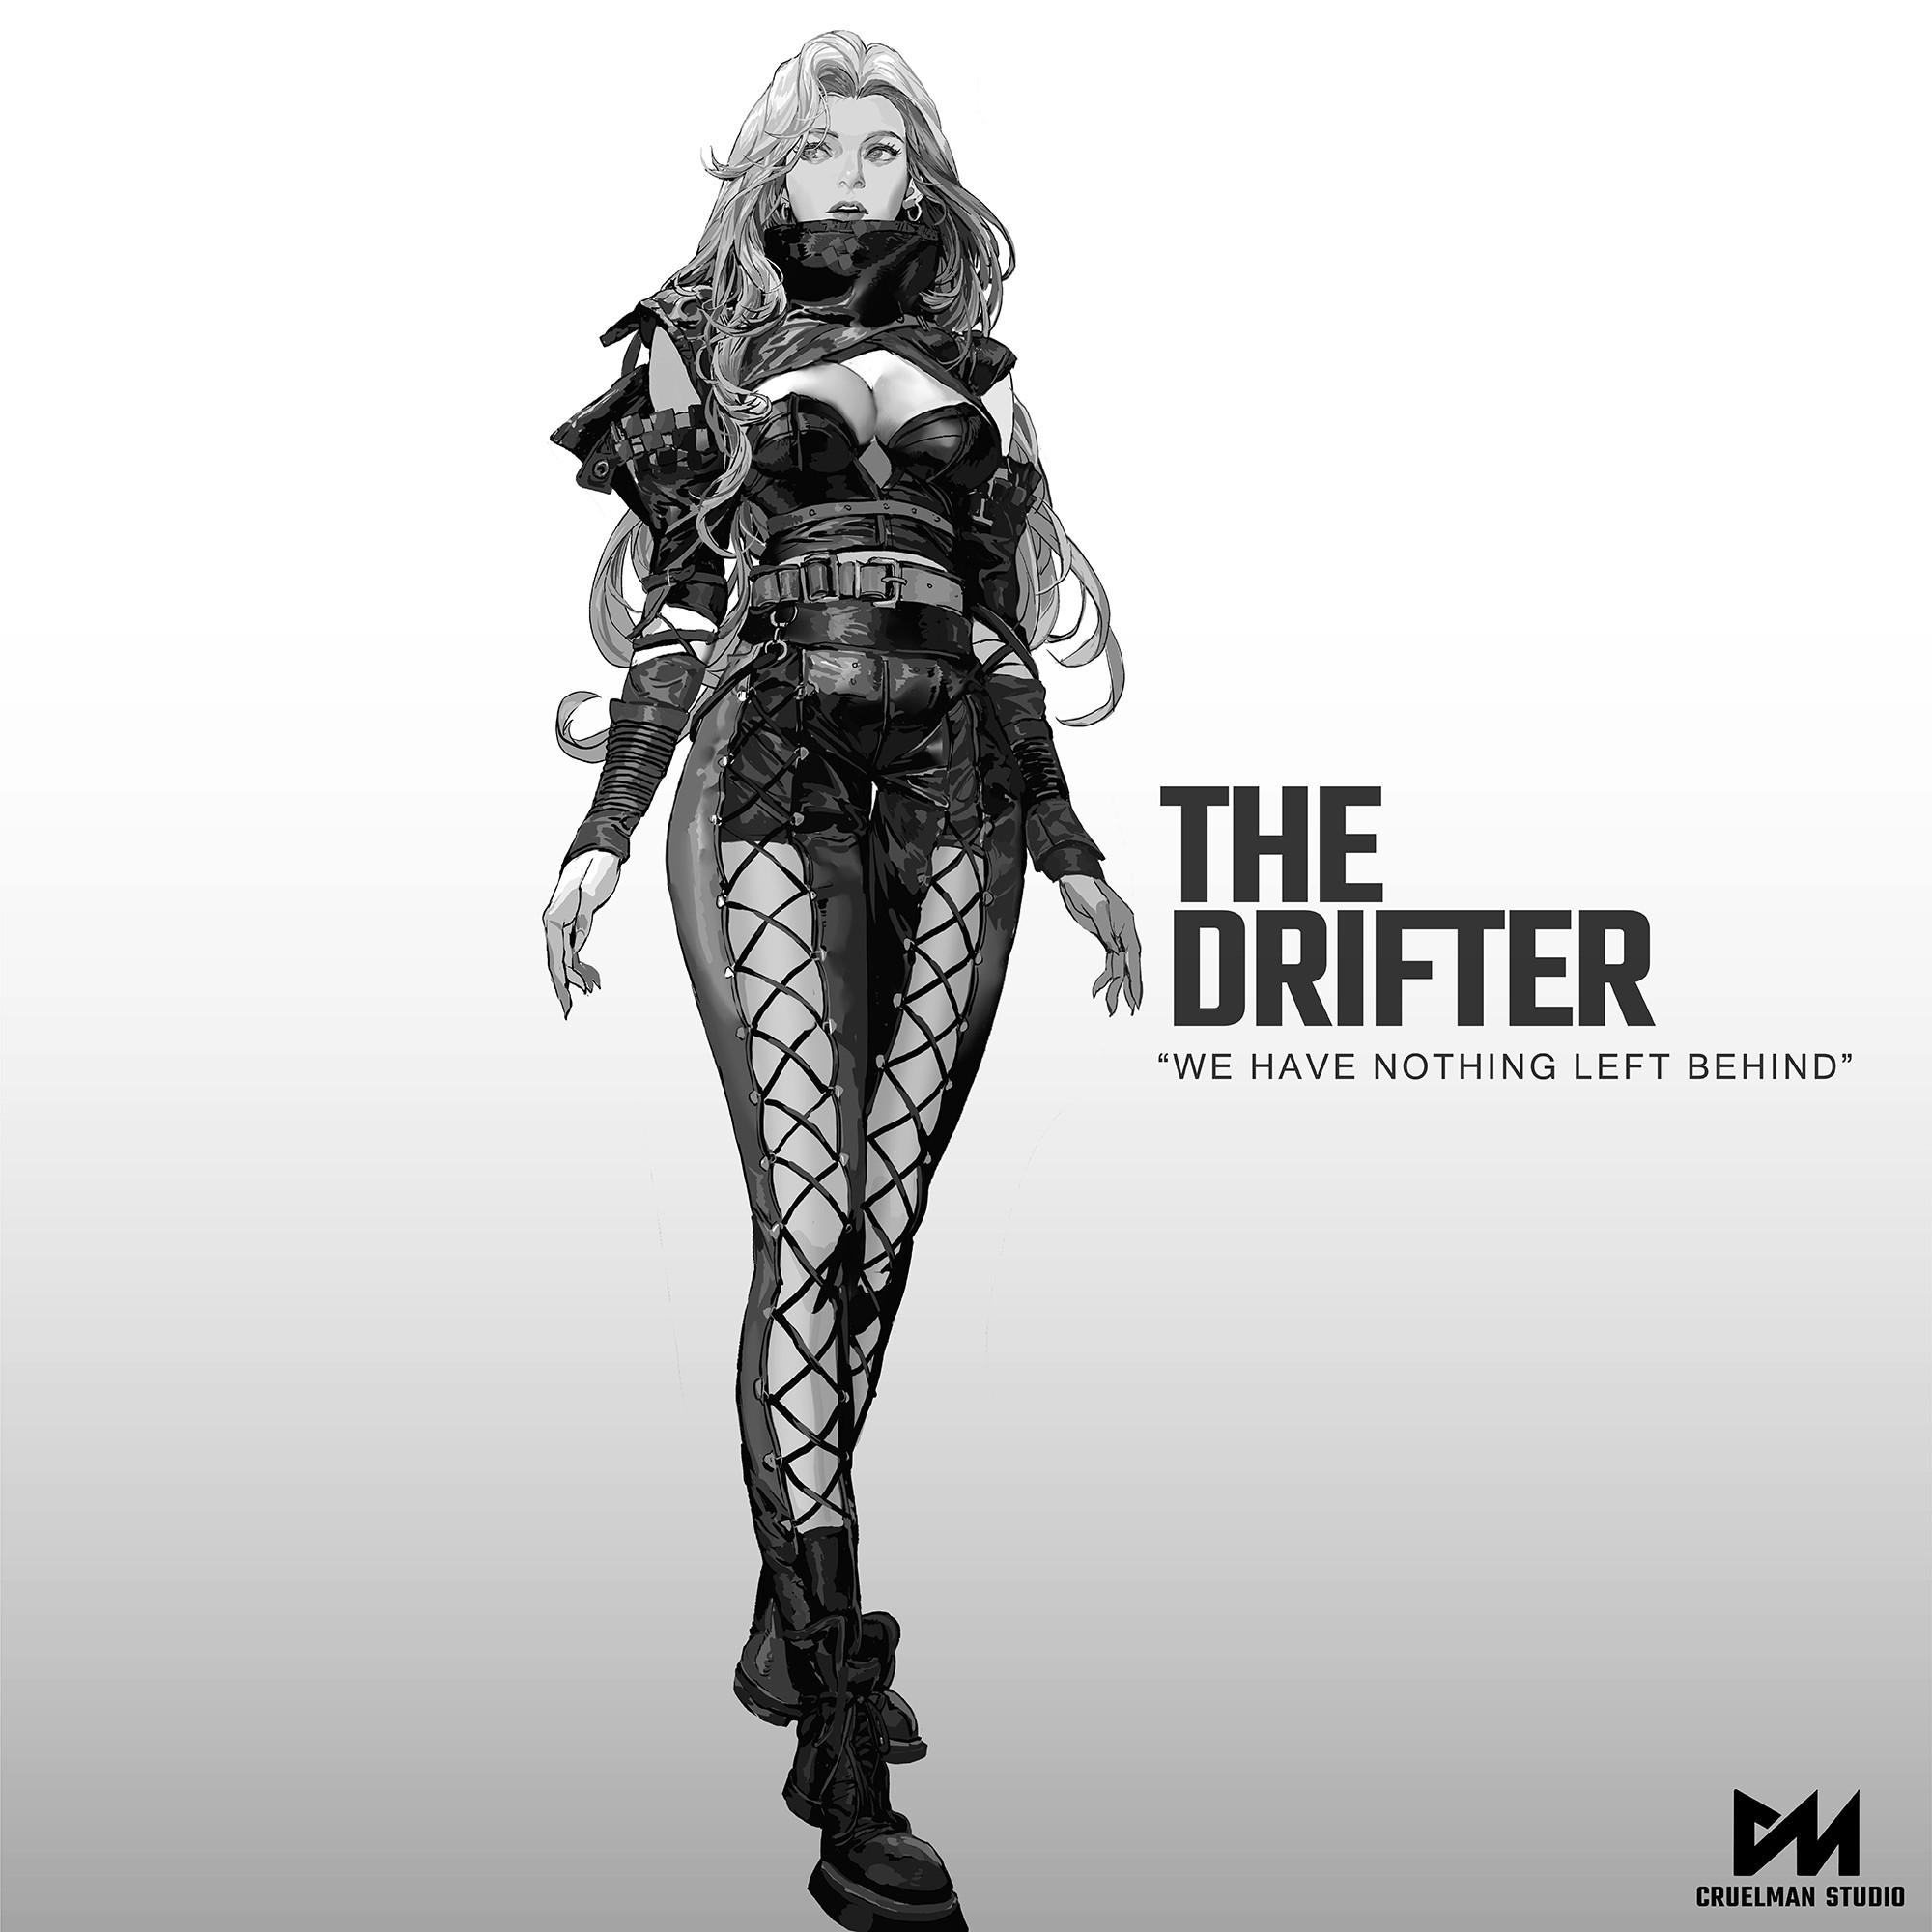 The Drifter
Mackenzie